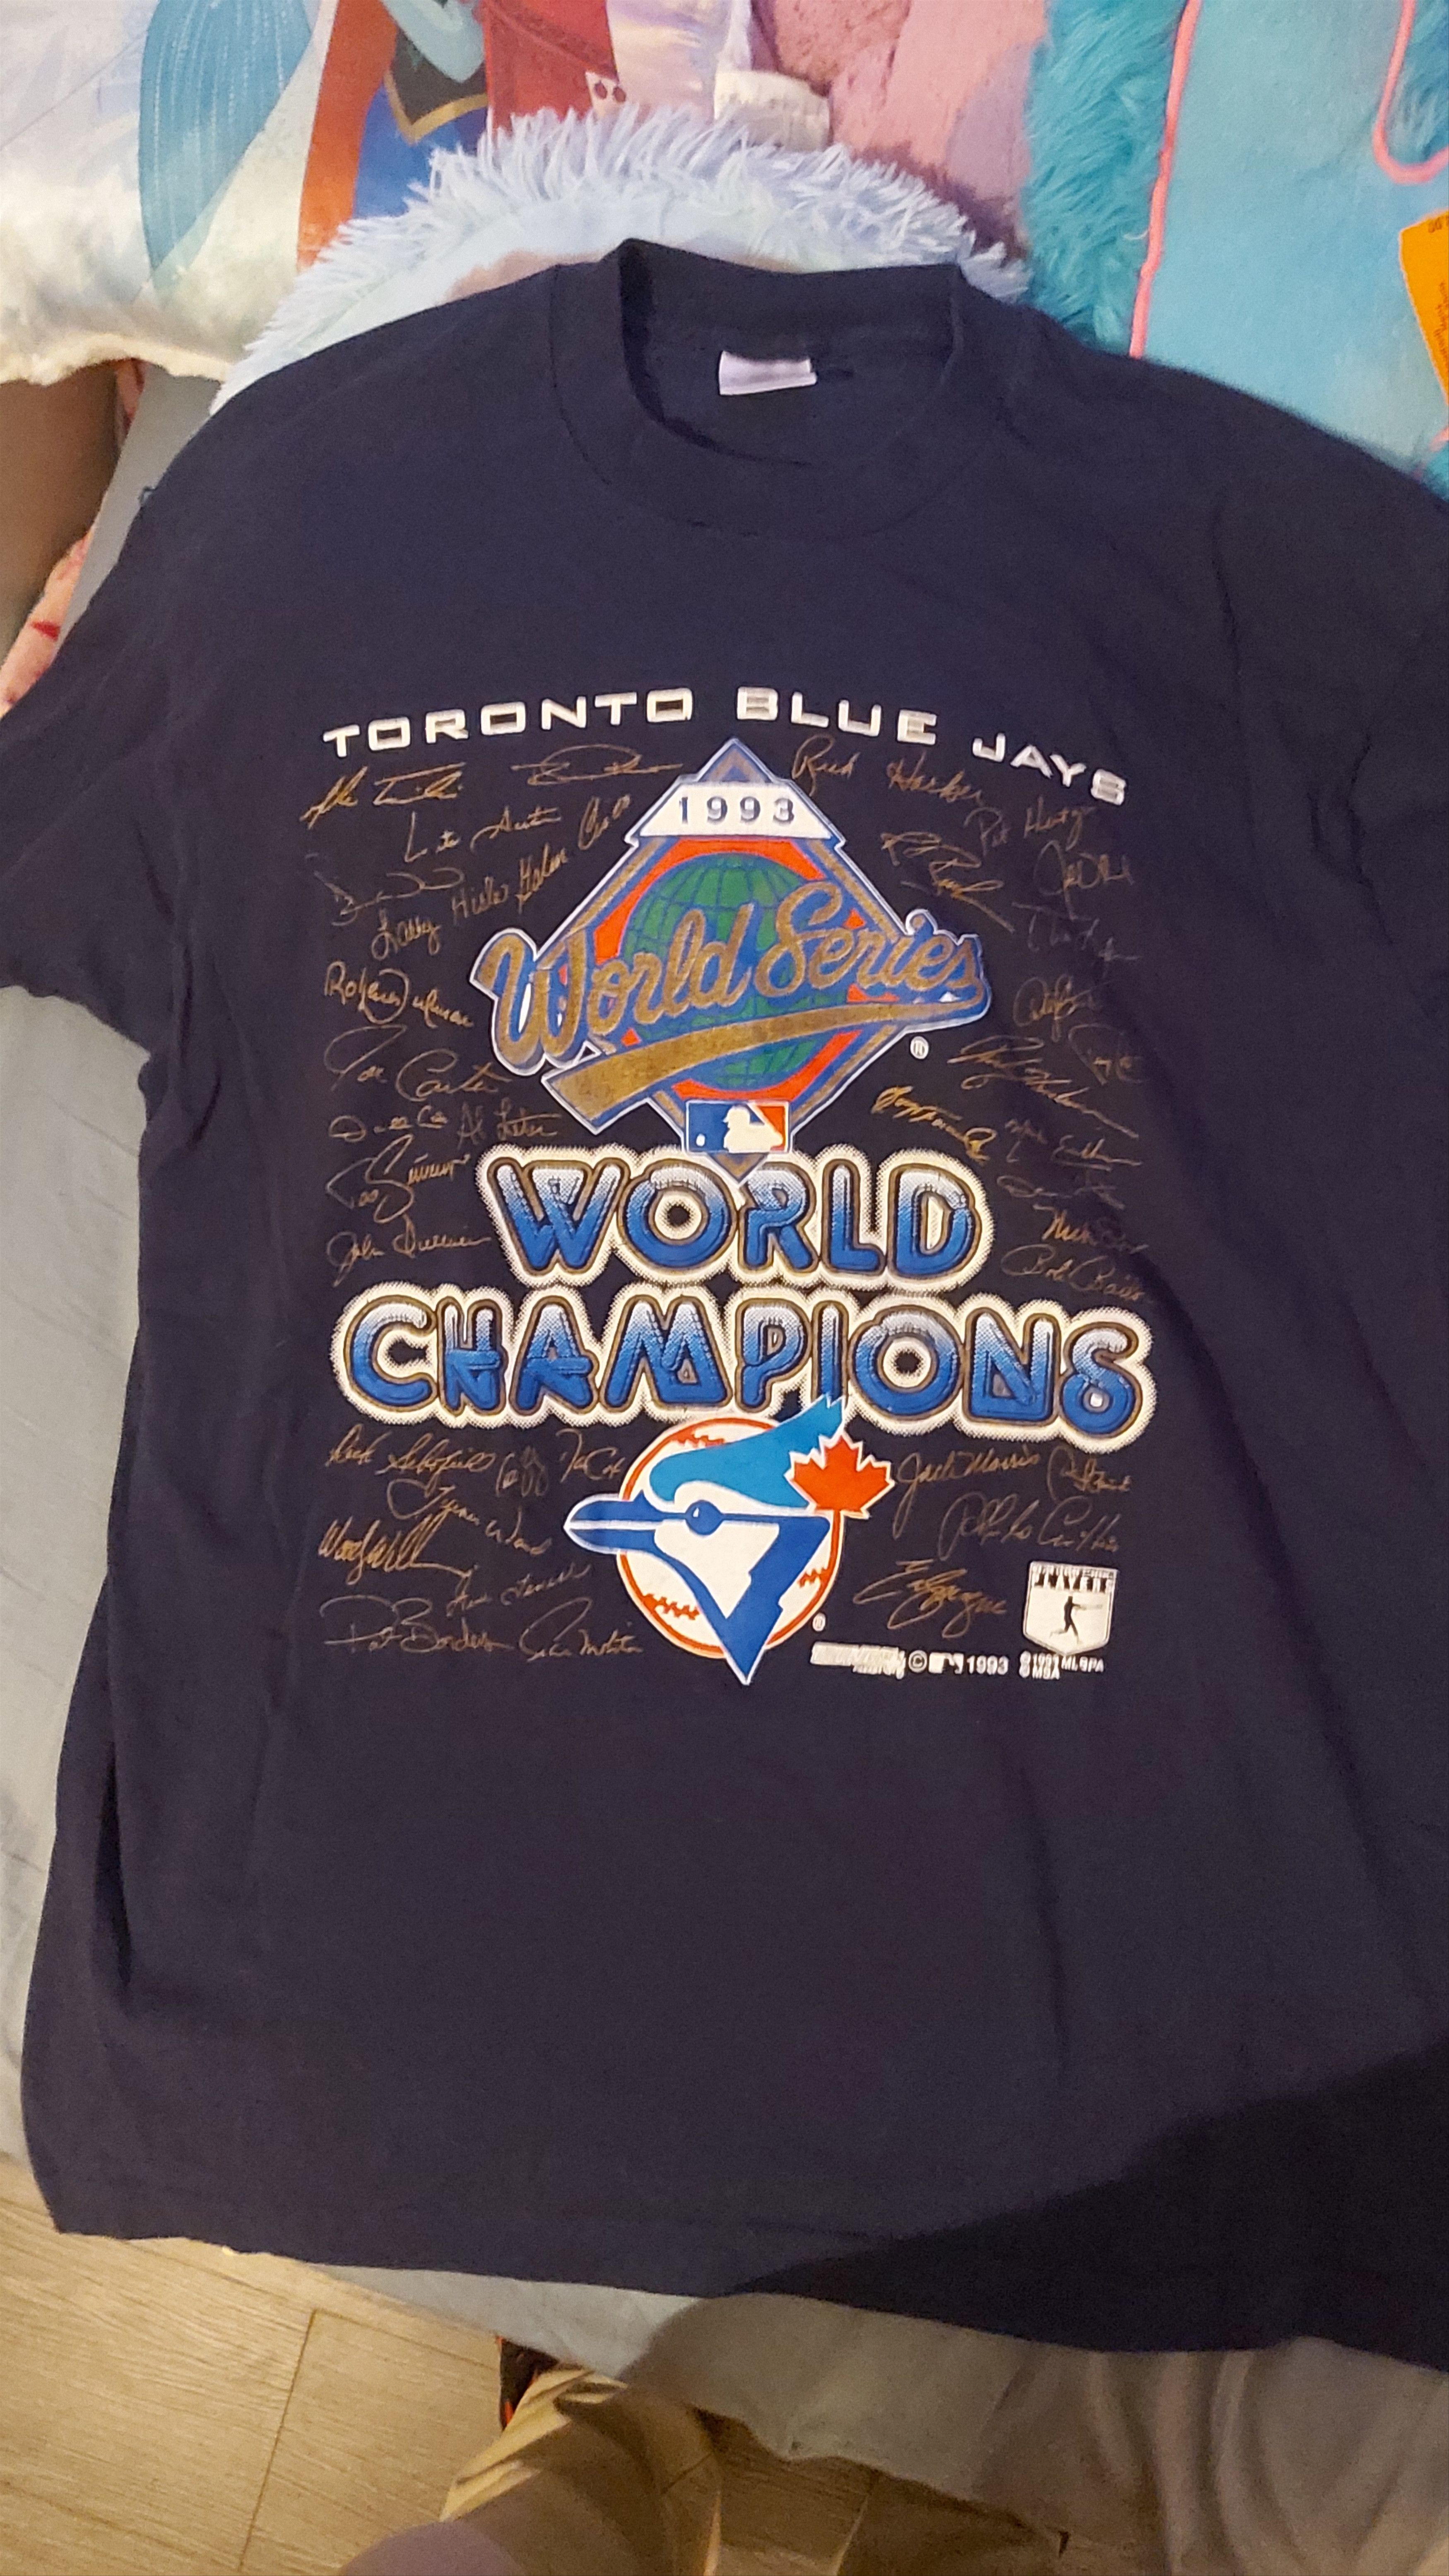 Vintage 1993 Toronto Blue Jays World Champs signature shirt. Size US XL / EU 56 / 4 - 1 Preview